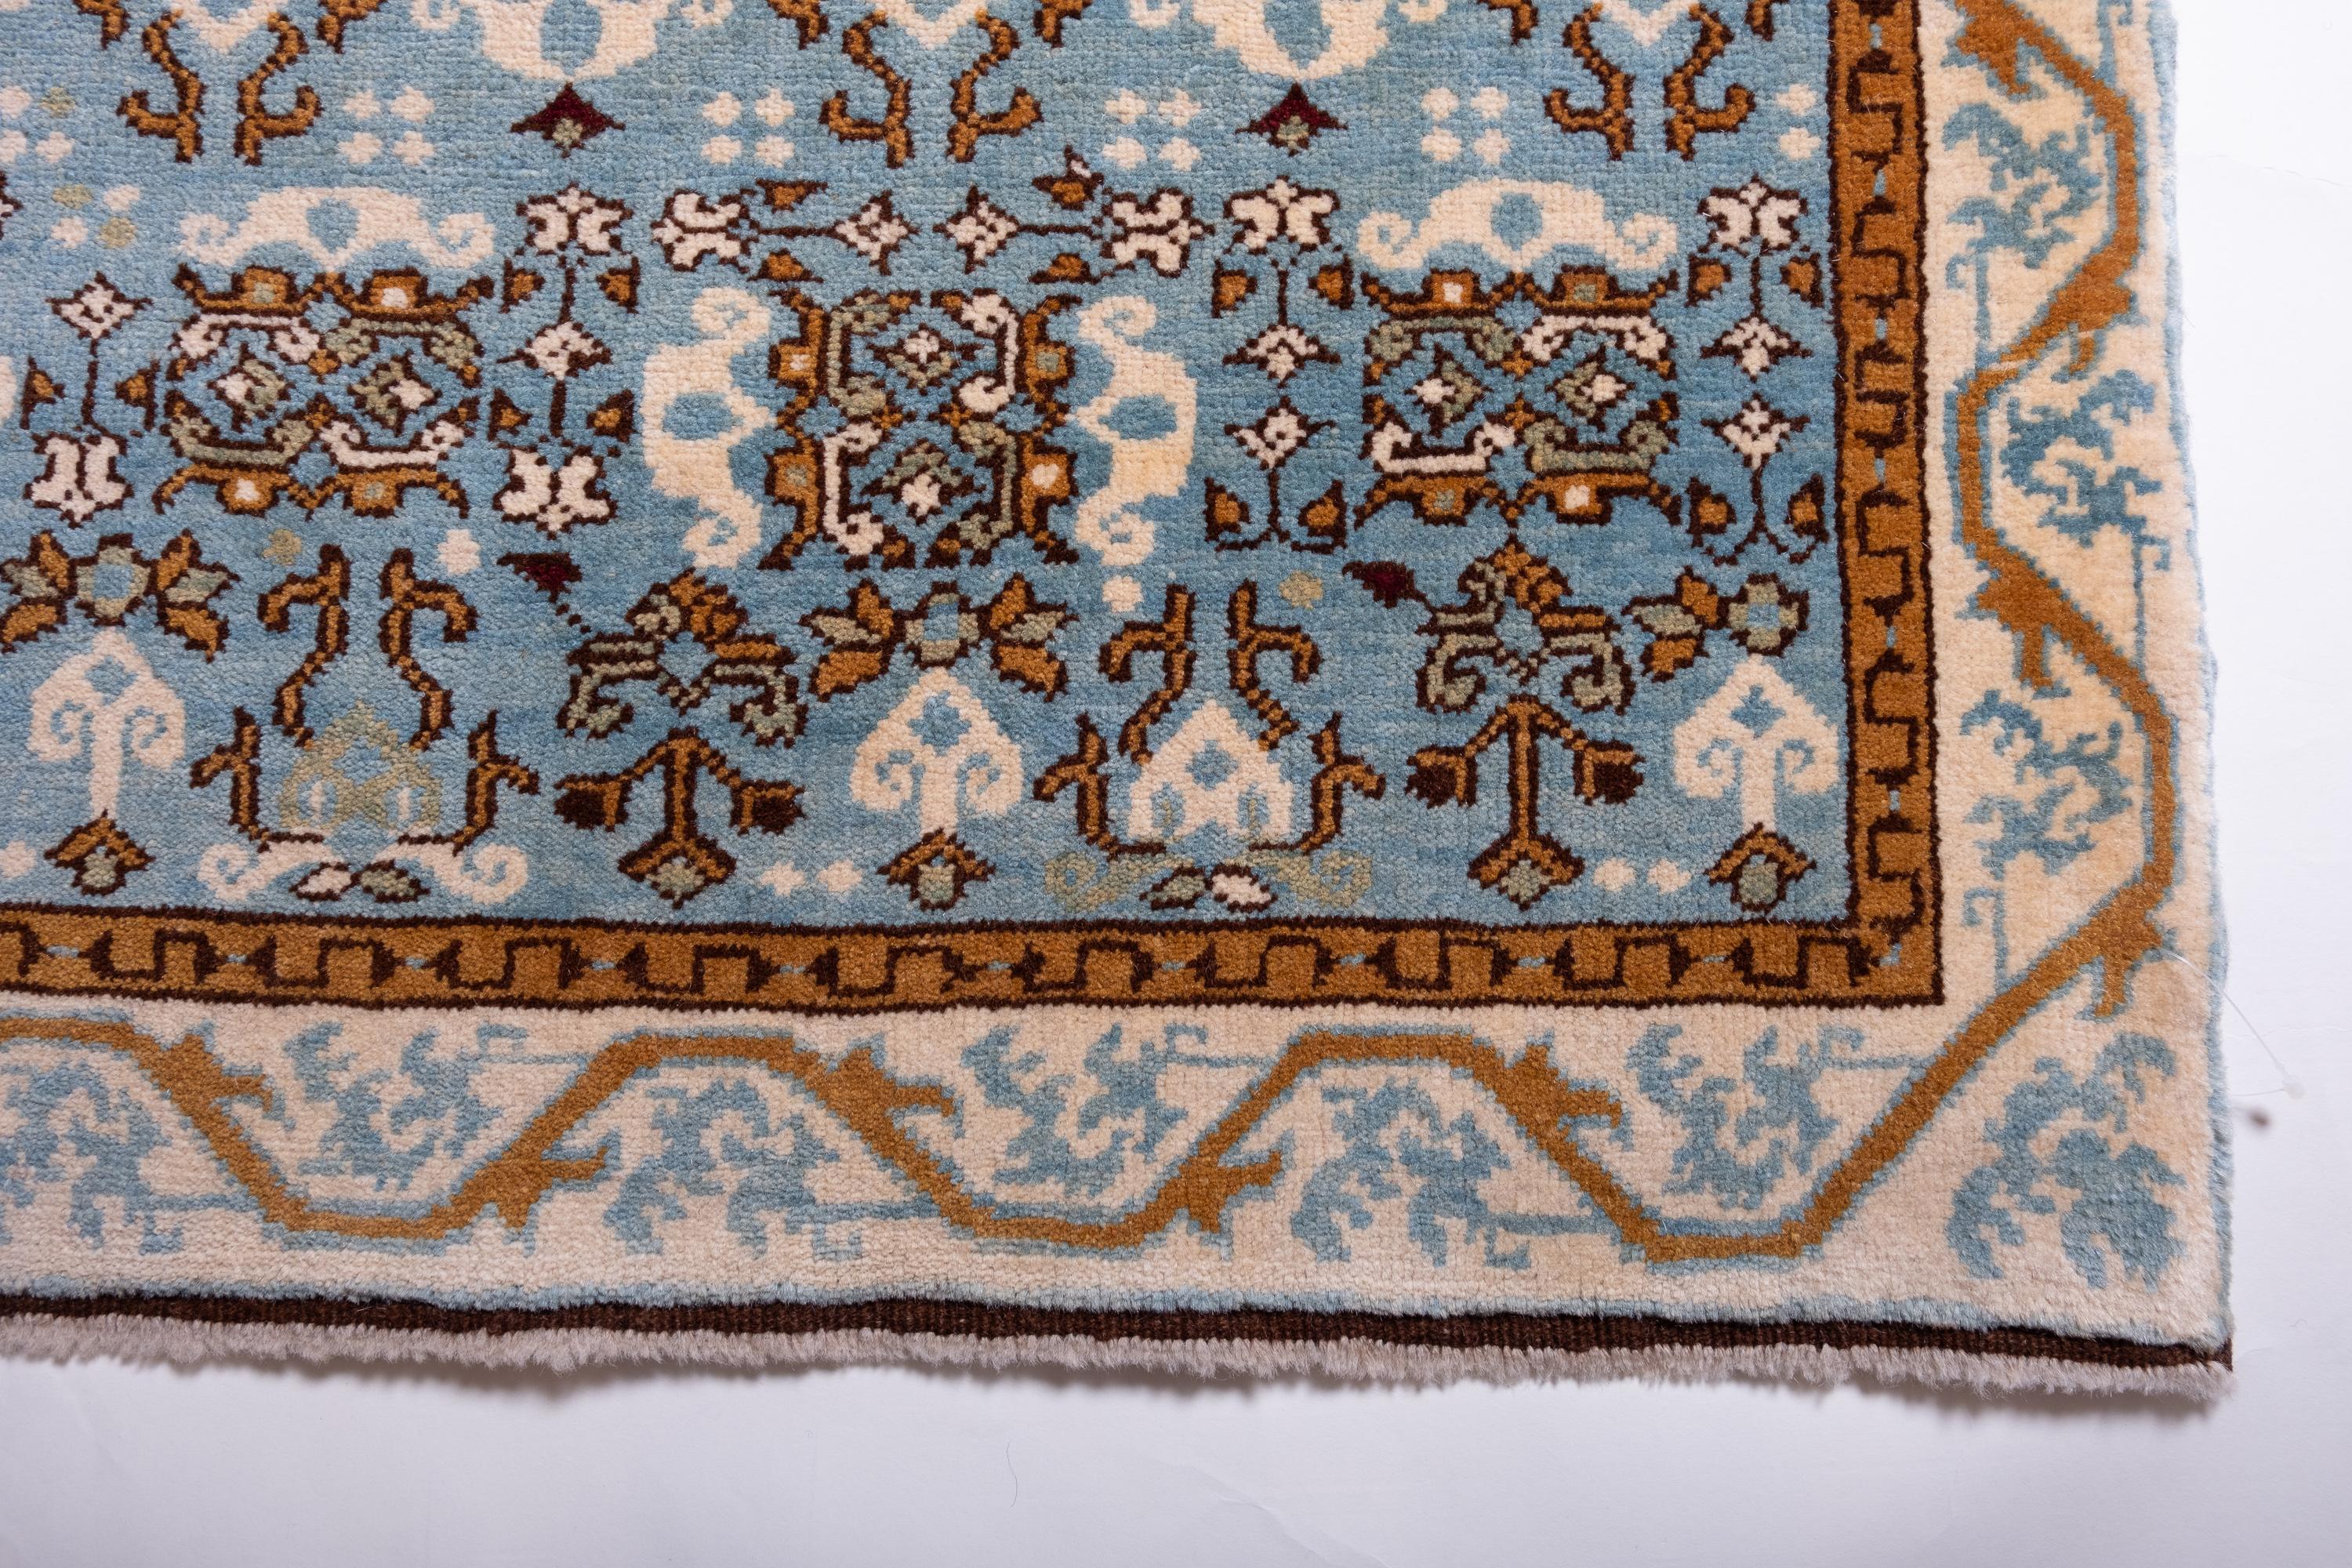 Das Design des Teppichs stammt aus der The C. L. David Collection'S, Kopenhagen. Dieser Teppich mit dem Cusped-Medaillon wurde im frühen 16. Jahrhundert von Mamluken-Sultanen in Kairo, Ägypten, entworfen. Einst in der Sammlung Hirth und später,